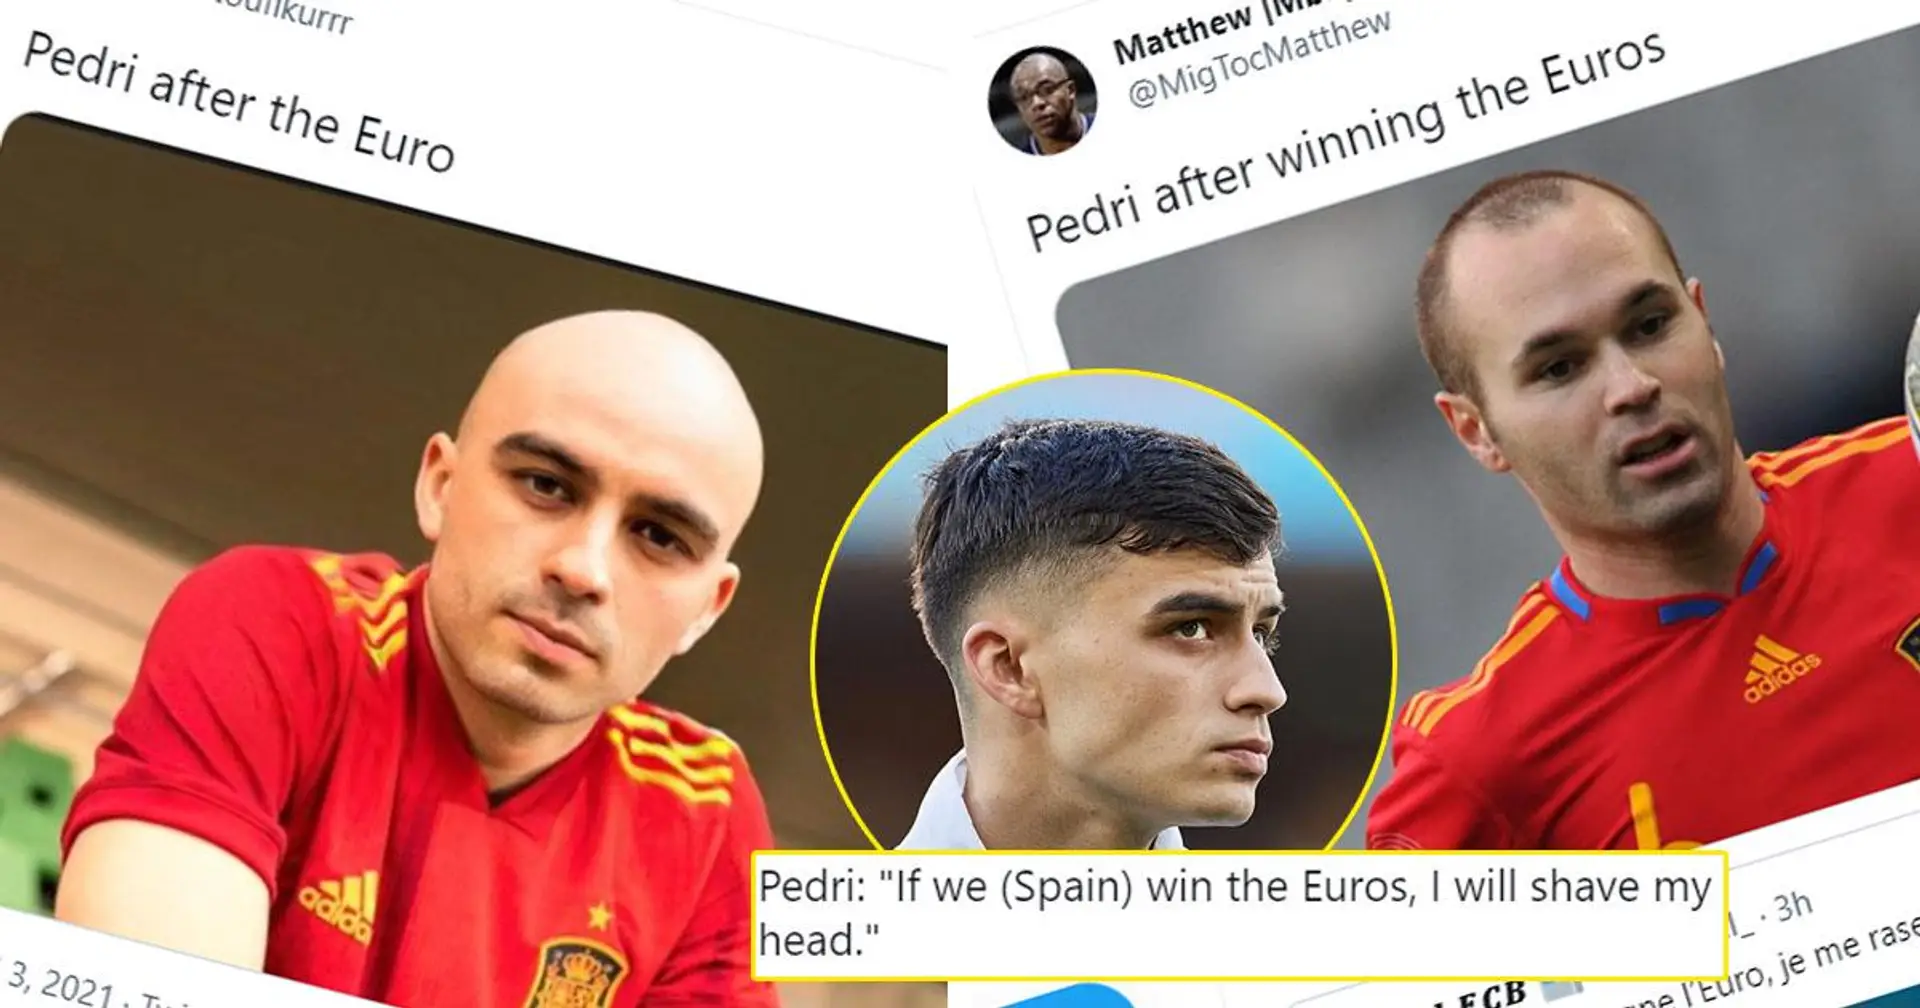 Pedri promet de se raser la tête si l'Espagne gagne l'Euro - les mèmes d'Iniesta s'intensifient